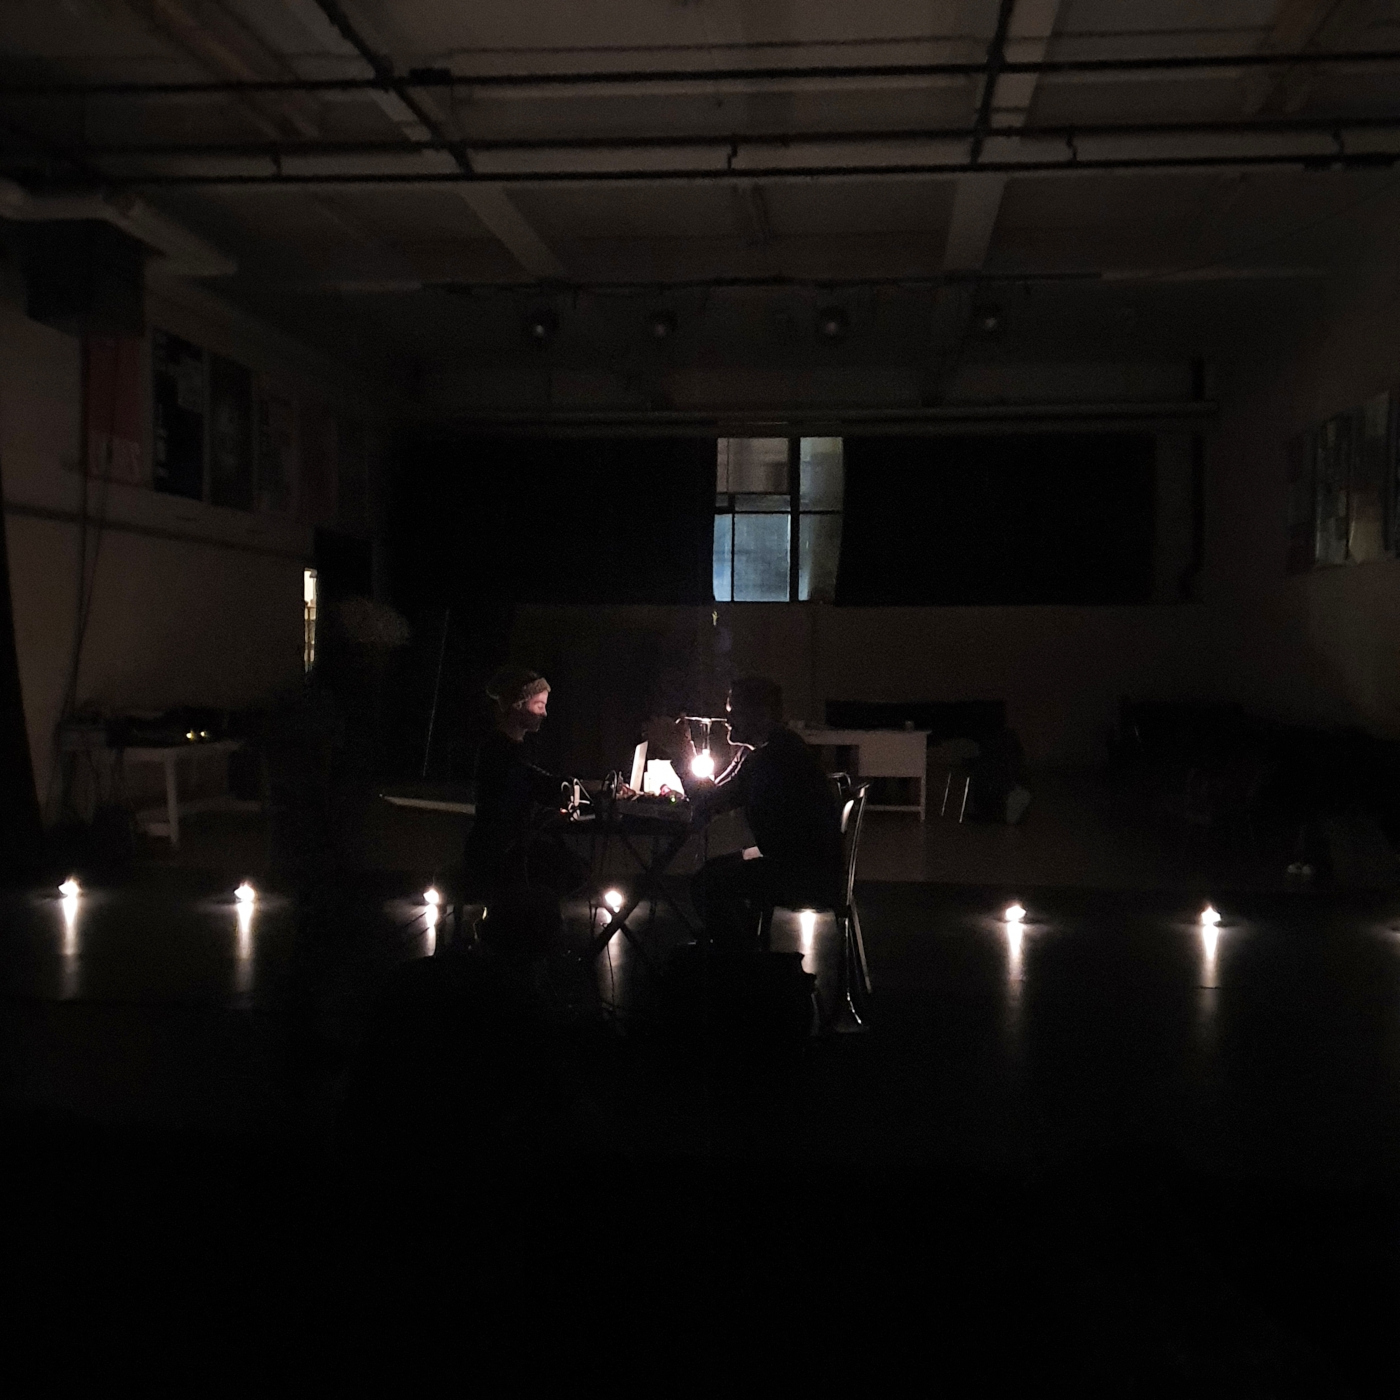 Deux personnes se font face dans un éclairage minimal, une rangée de lumières traversant la photo. Au fond, une fenêtre.